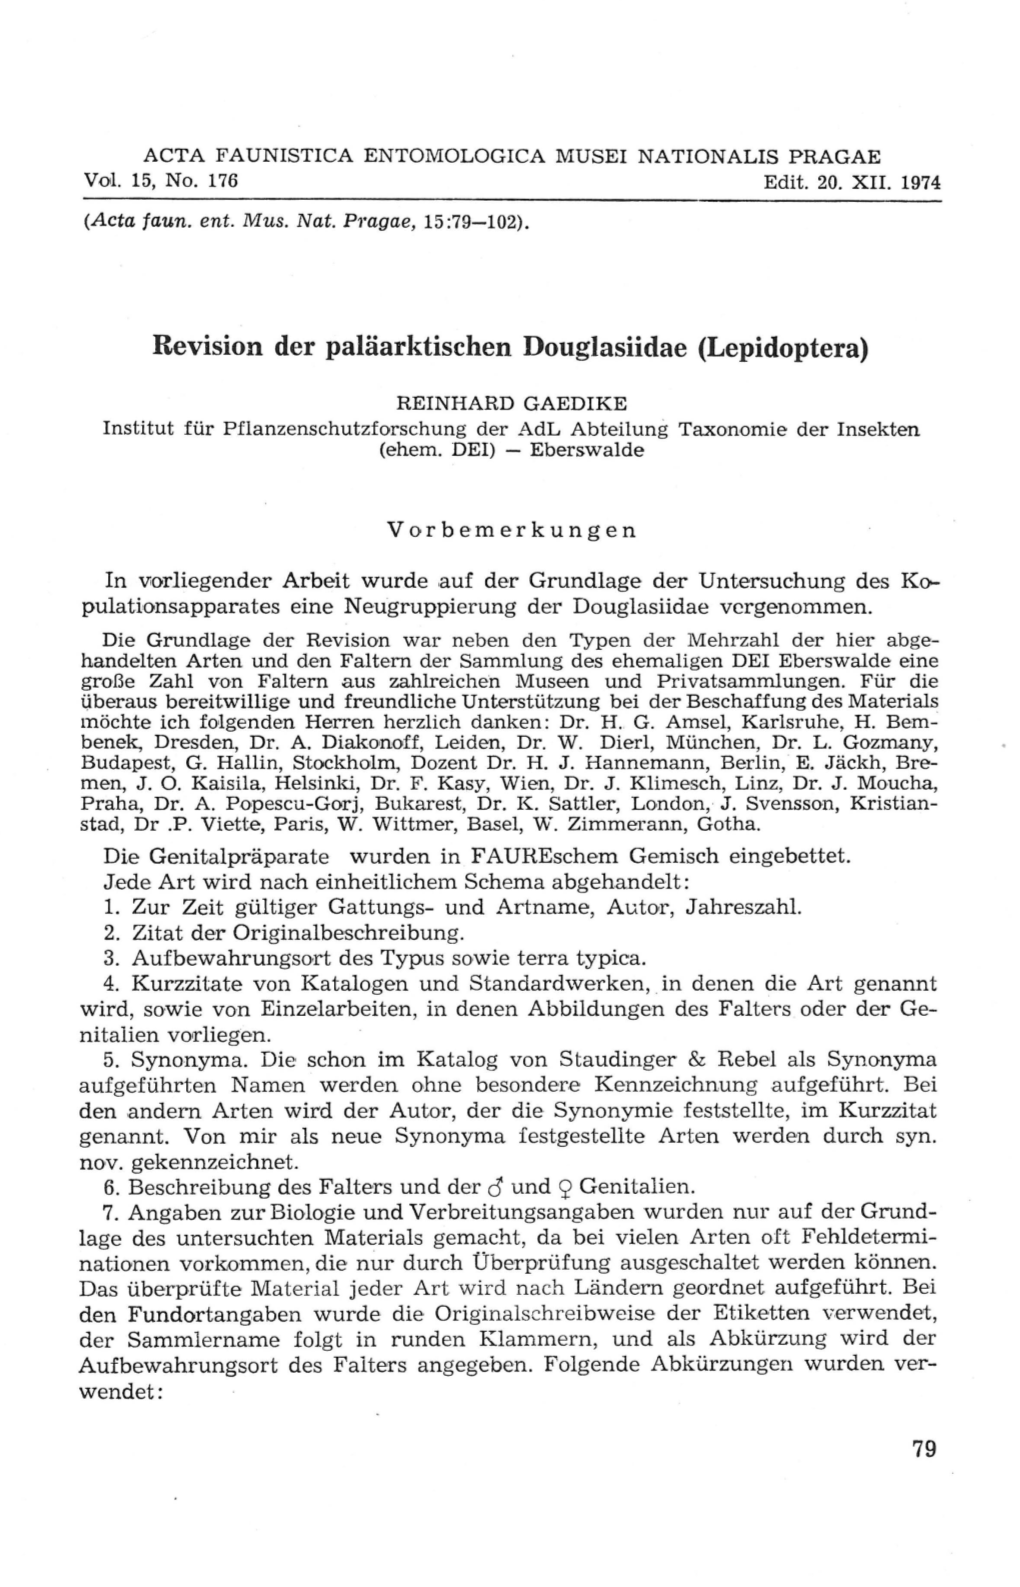 Revision Der Paläarktischen Douglasiidae (Lepidoptera)